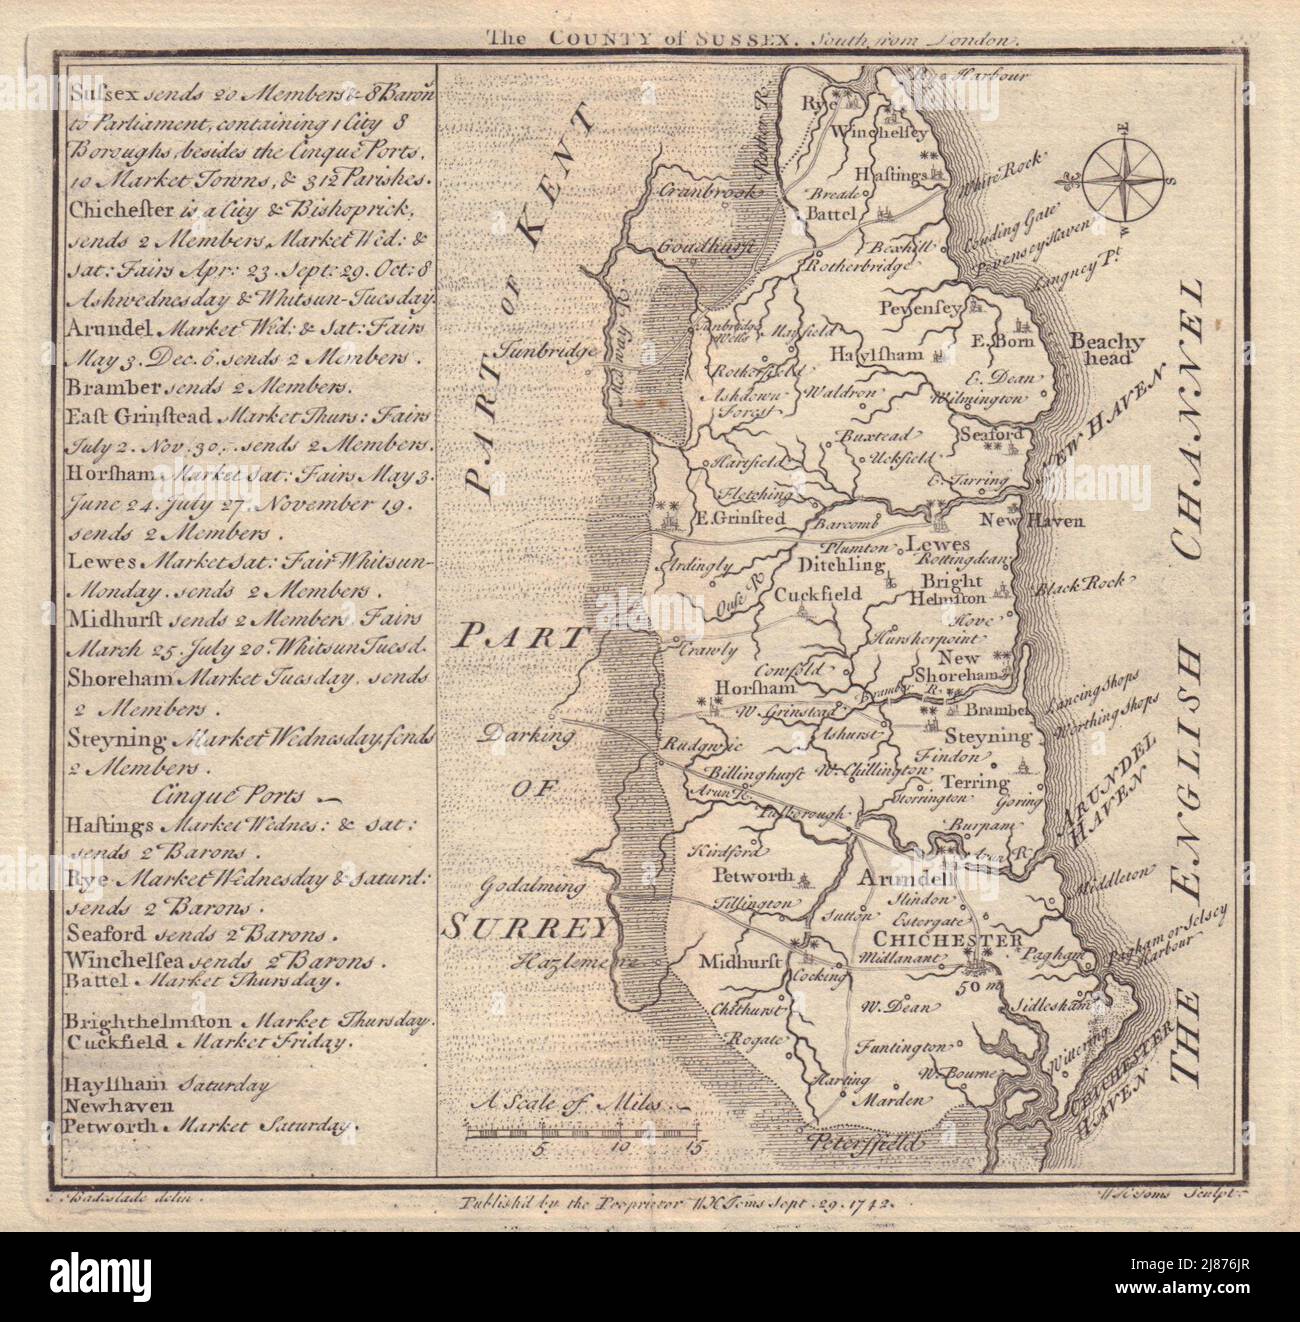 Antike Grafschaft Landkarte von Sussex von Badeslade & Toms. Ost-Ausrichtung 1742 Stockfoto